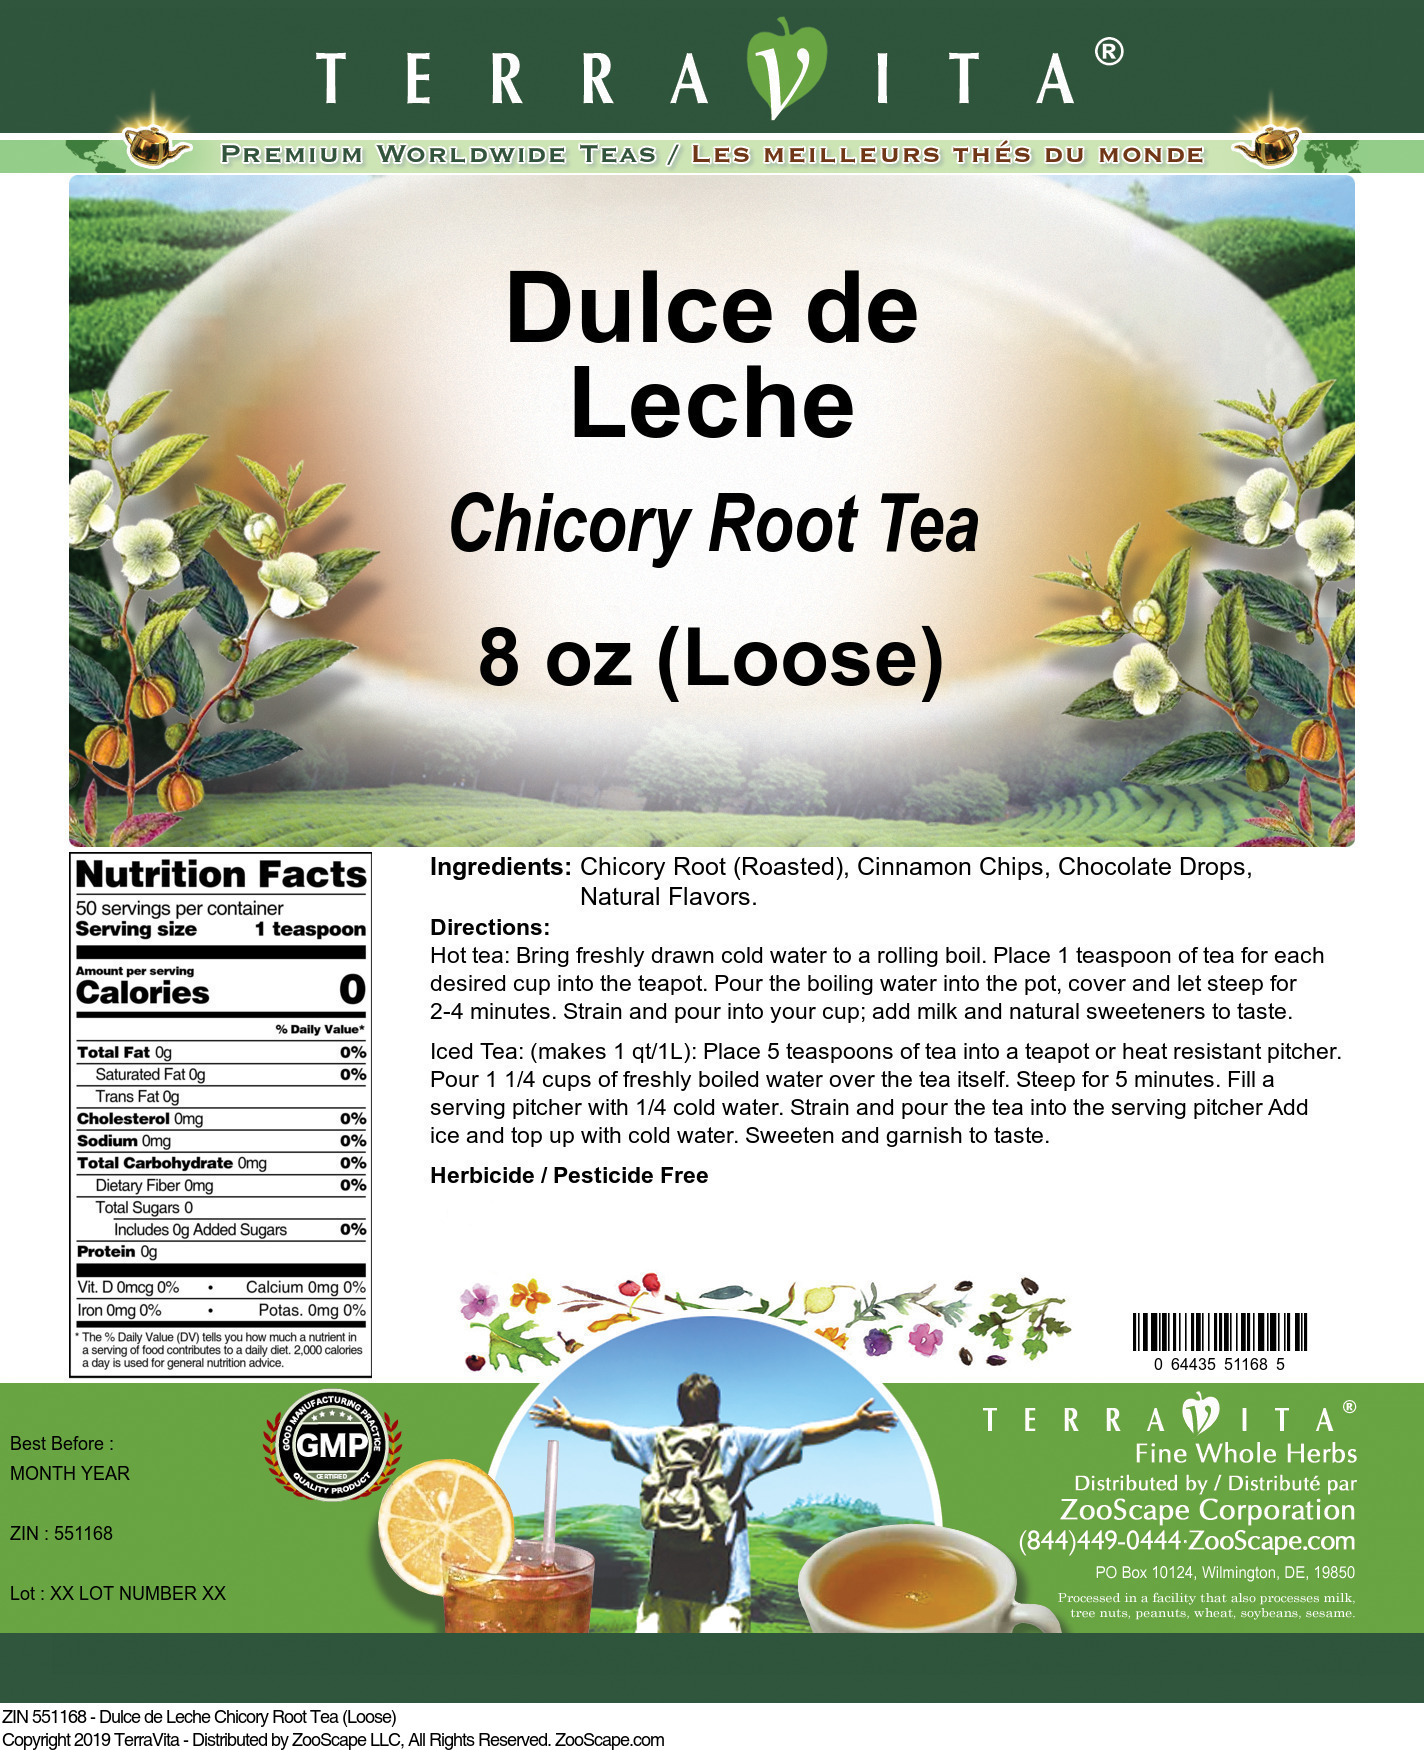 Dulce de Leche Chicory Root Tea (Loose) - Label